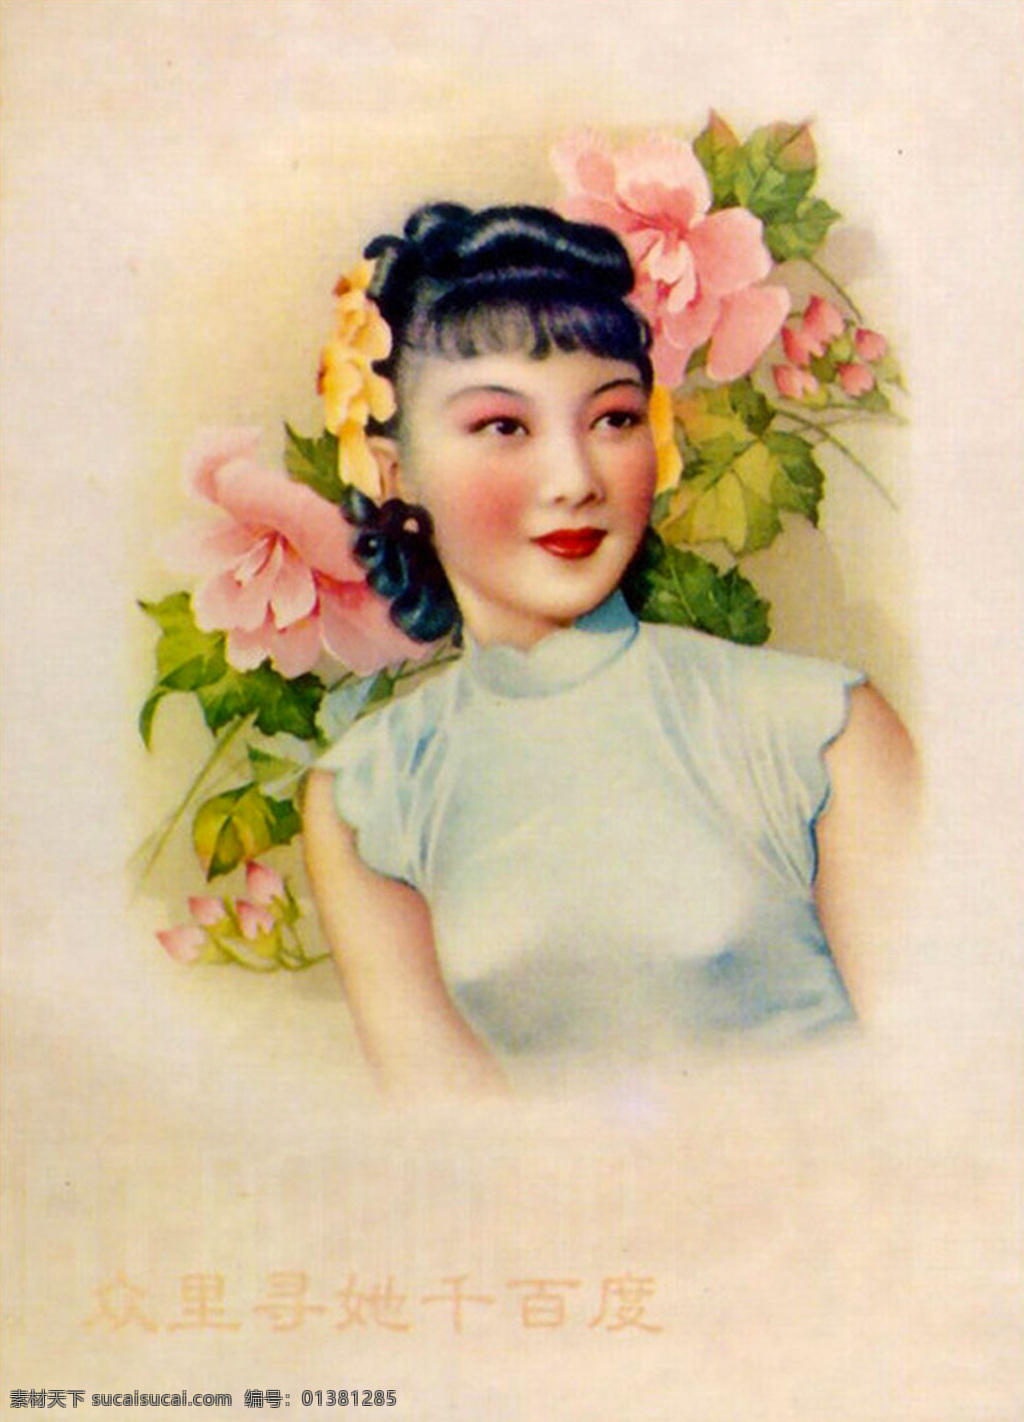 老上海 老上海海报 海报 老海报 老上海女人 老上海明星 女人 美女 舞女 众 里 寻 千 百度 传统文化 文化艺术